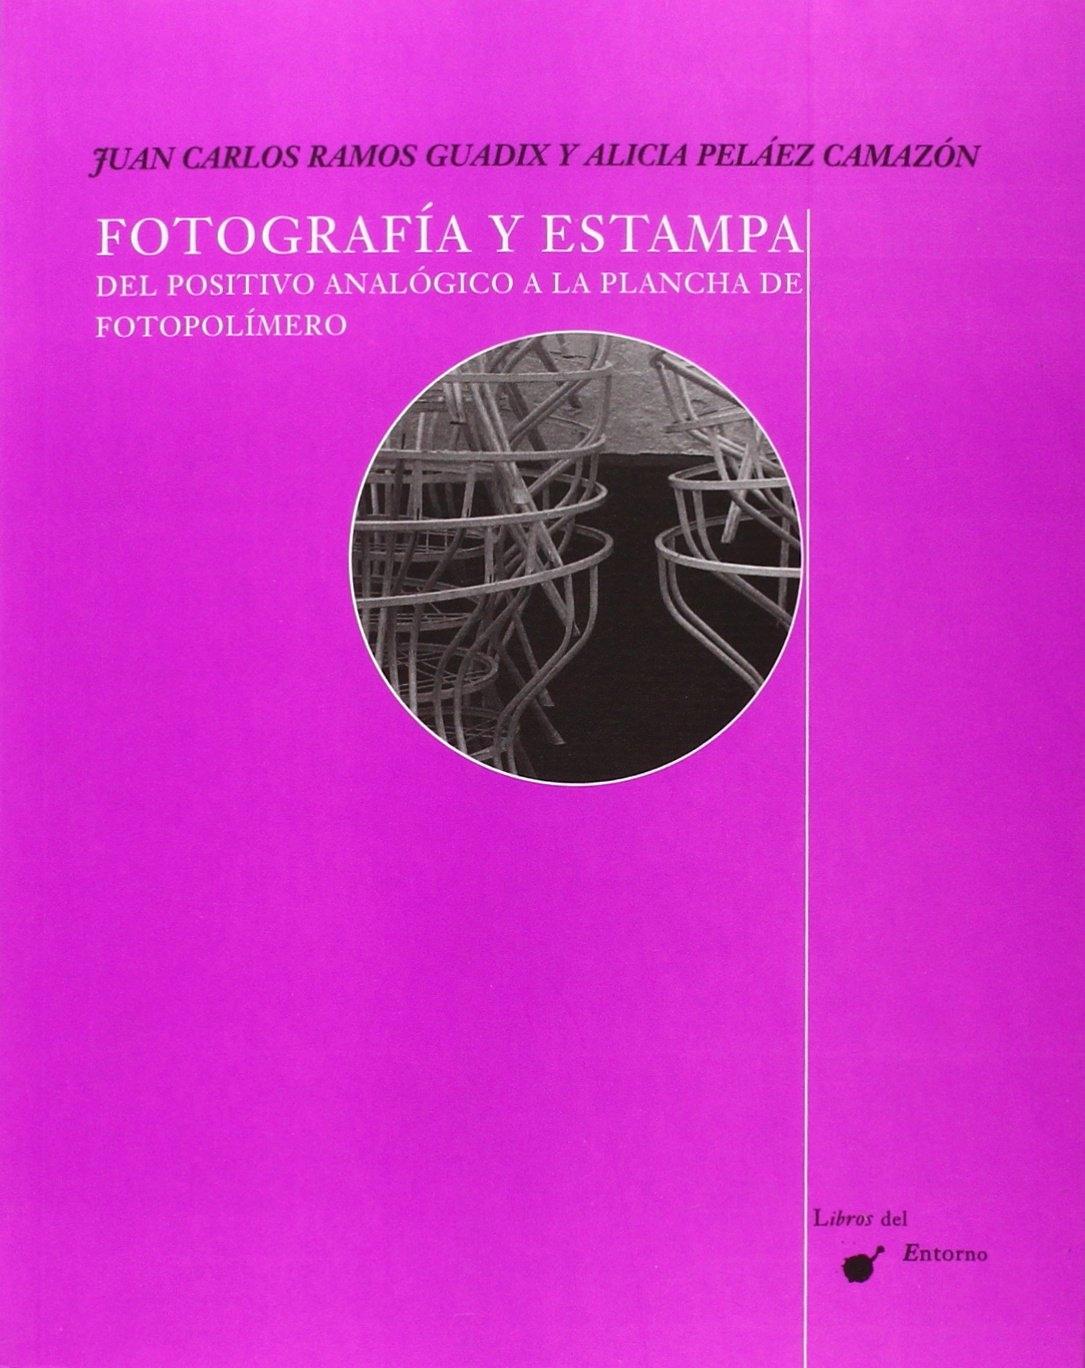 FOTOGRAFIA Y ESTAMPA. DEL POSITIVO ANALOGICO A LA PLANCHA DE FOTOPOLIMERO